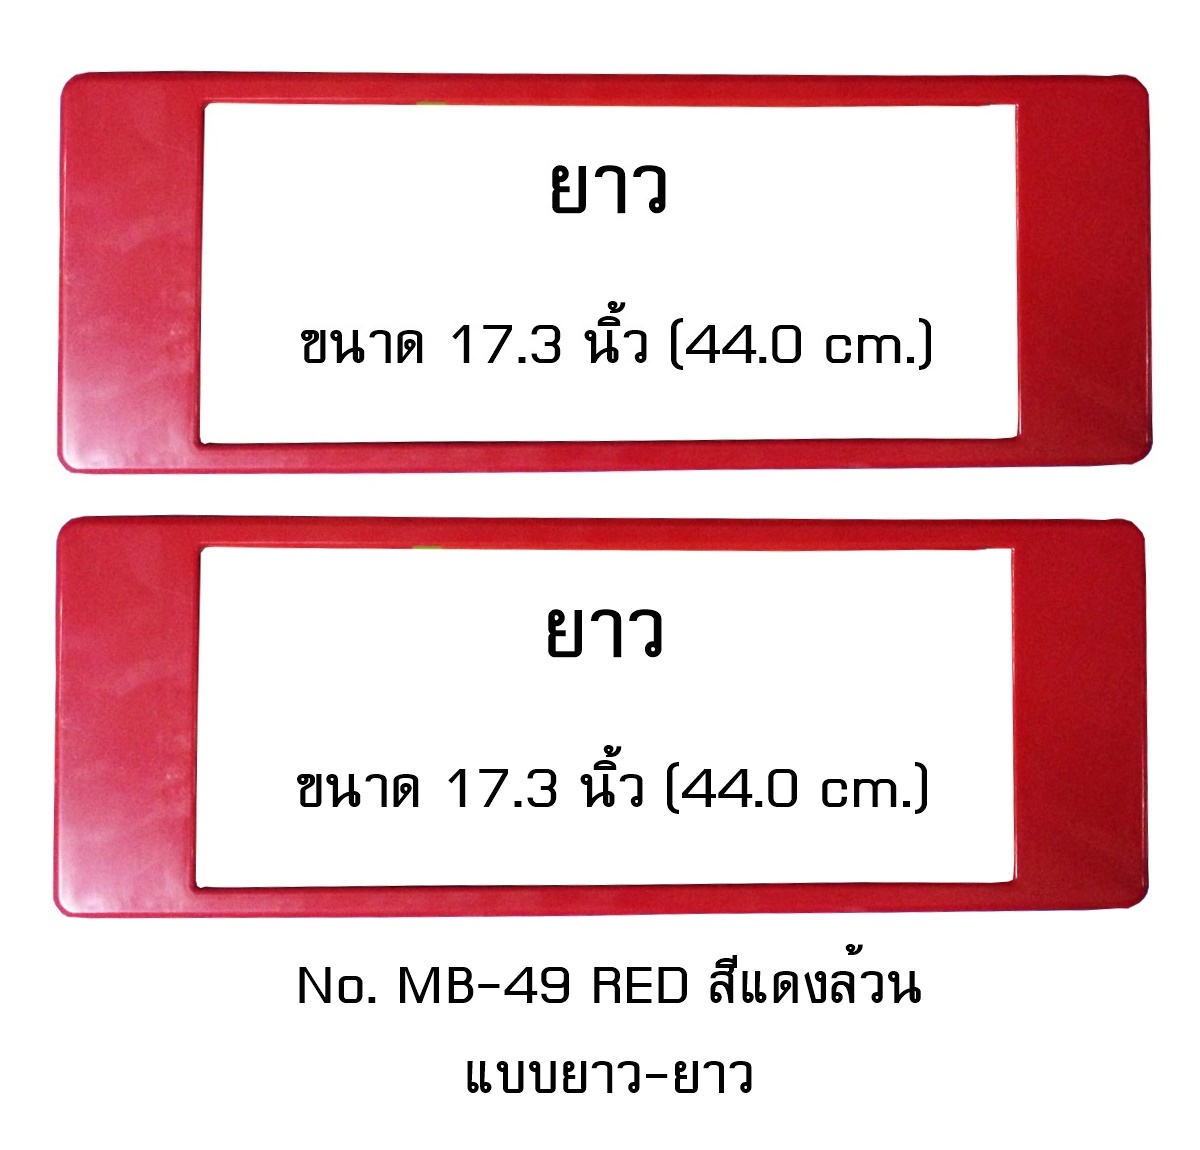 กรอบป้ายทะเบียน กันน้ำ MB-49 RED สีแดงล้วน แบบยาว-ยาว ระบบคลิปล็อค 8 จุด พร้อมน็อตอะไหล่